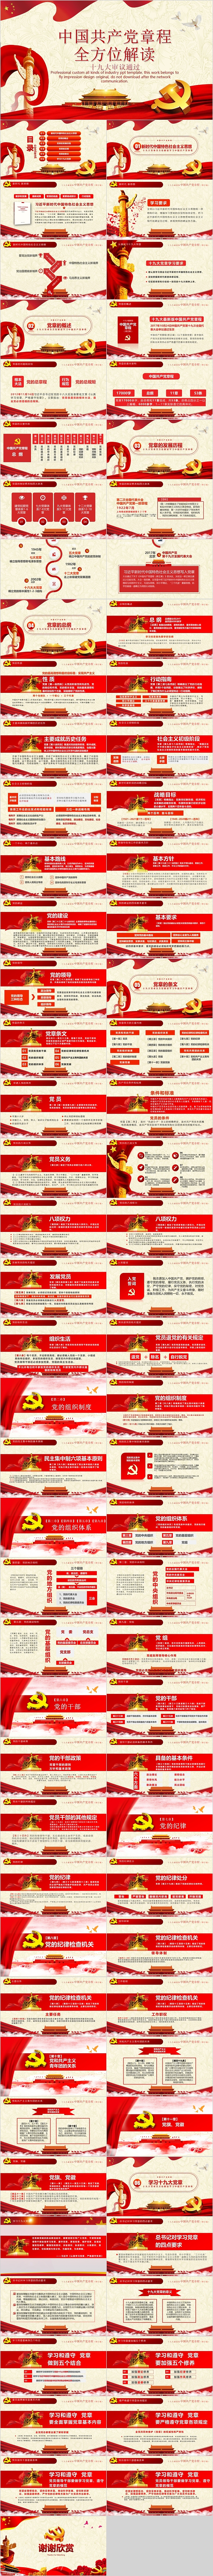 十九大审议通过中国共产党章程全方位解读